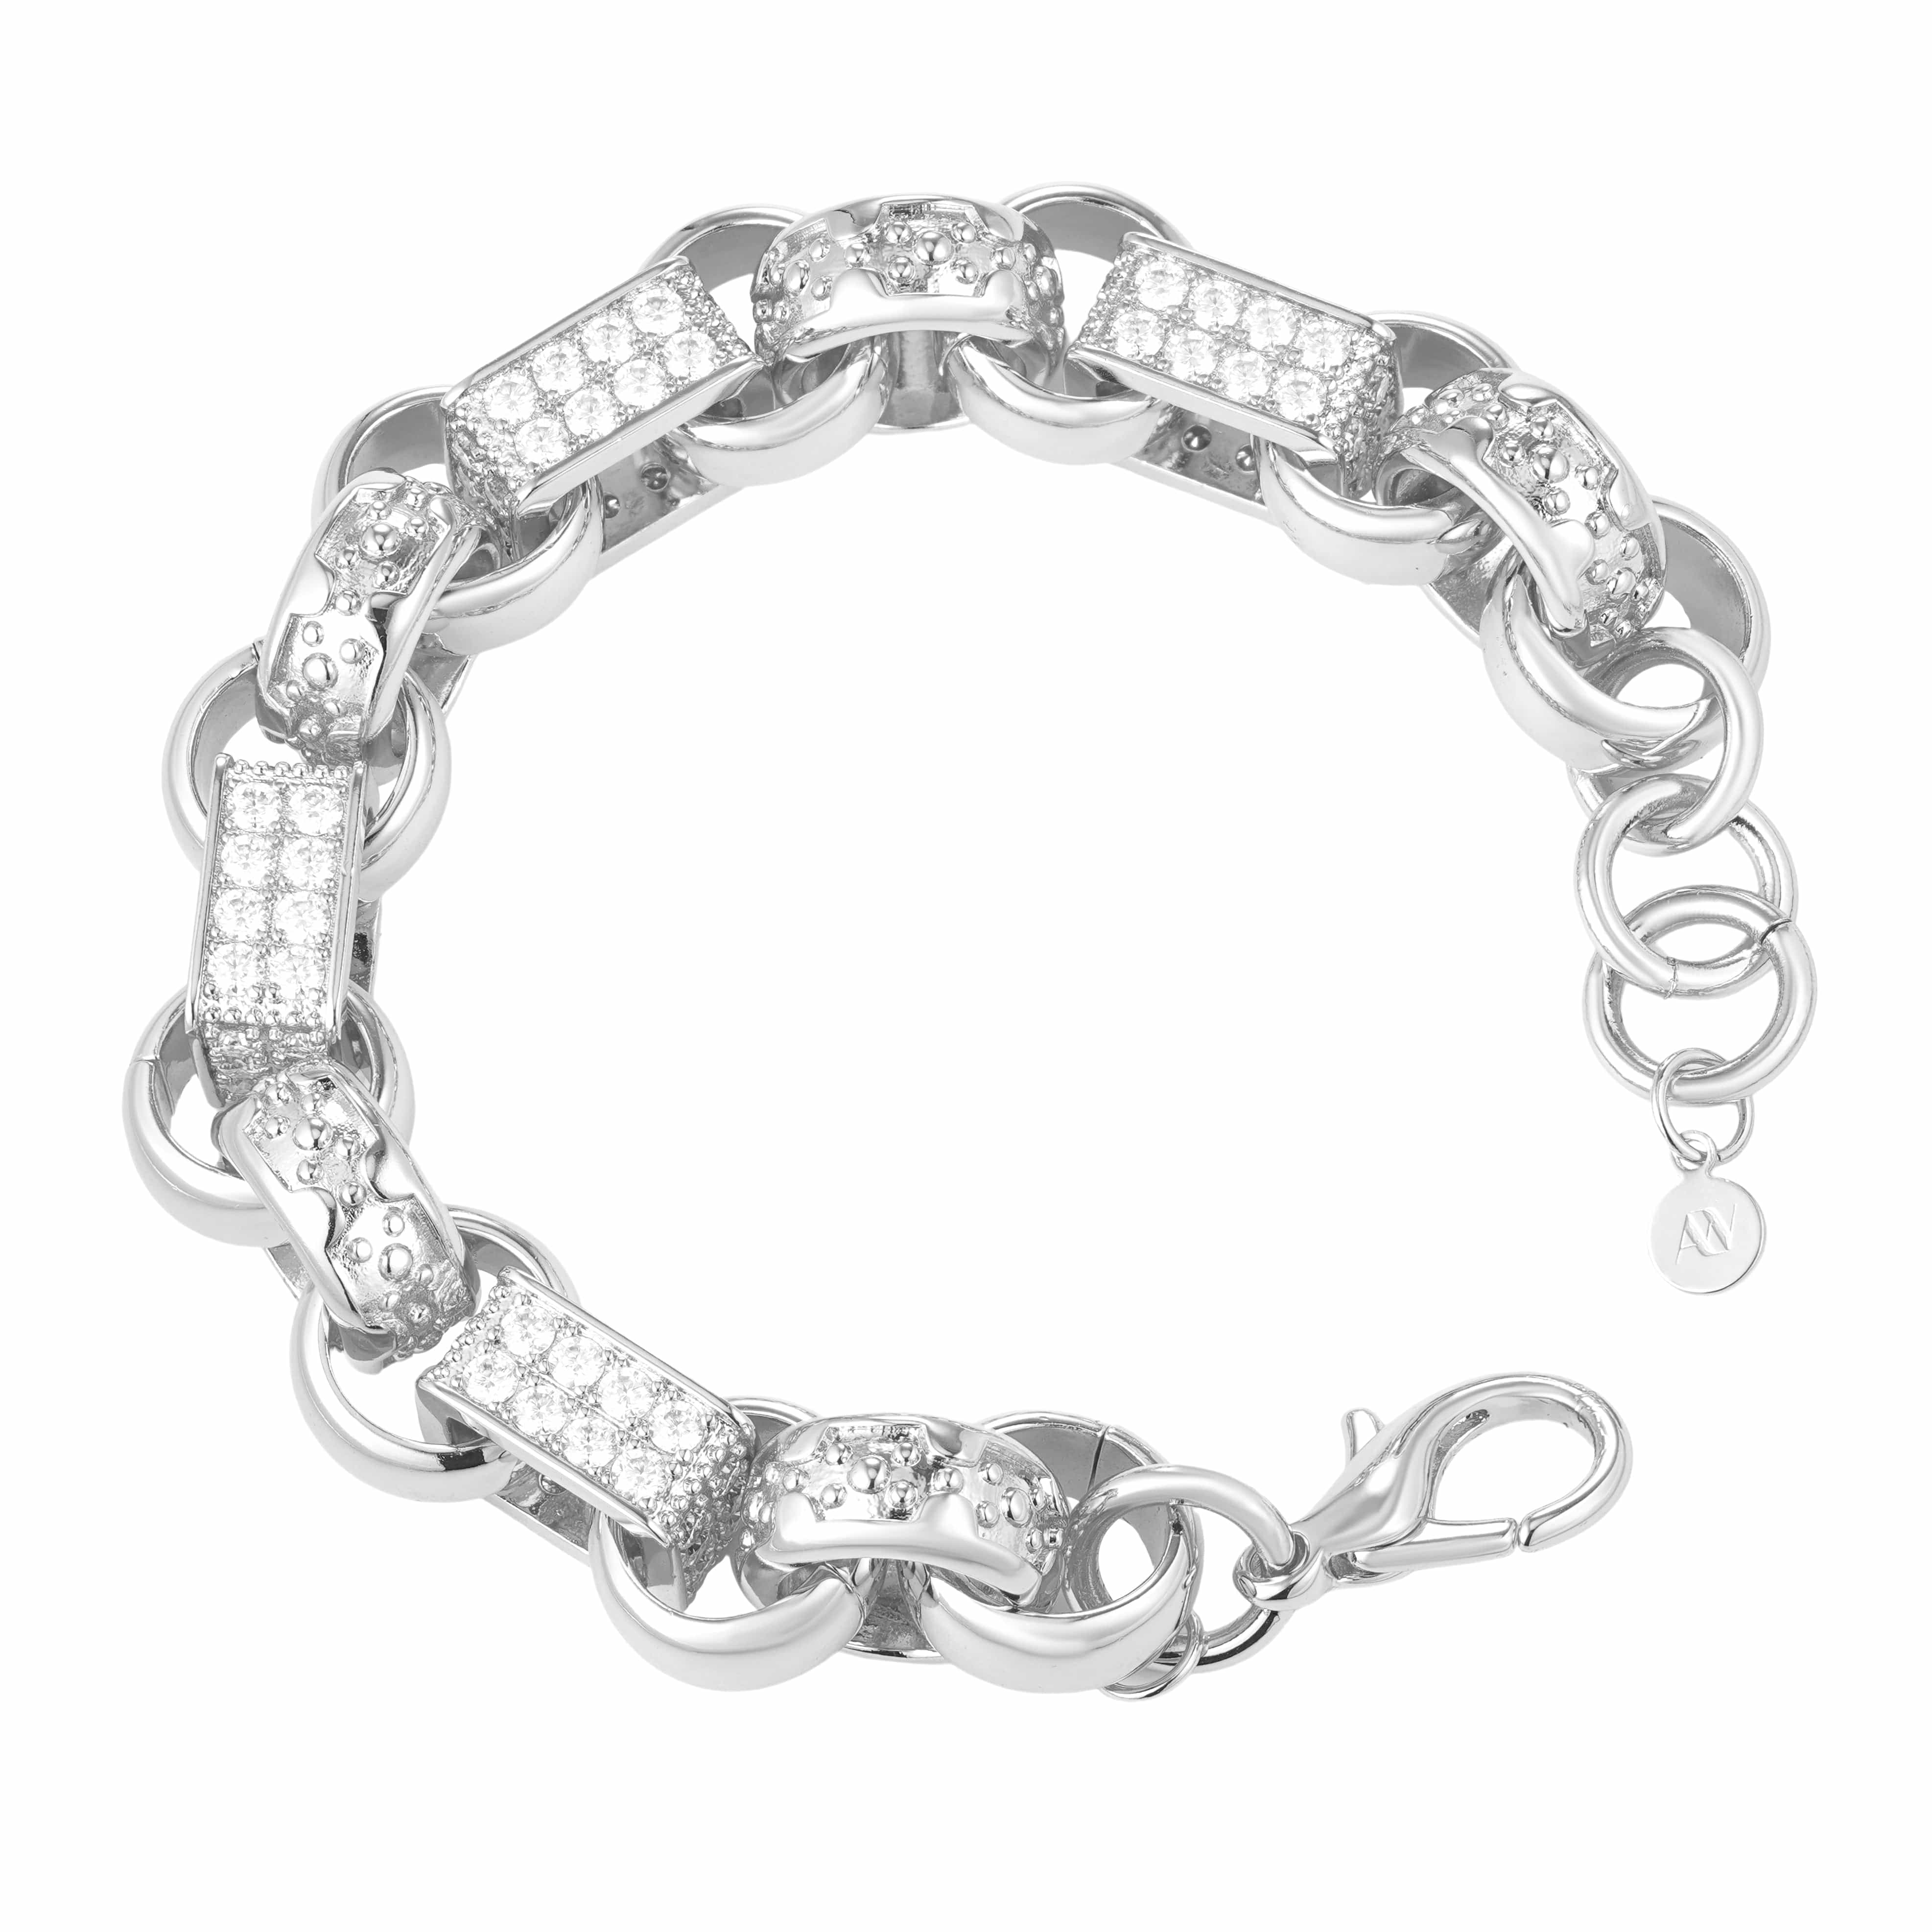 Gold Dipped, CZ Diamonds Bracelets Diamond Gypsy Link Bracelet 16mm - White Gold